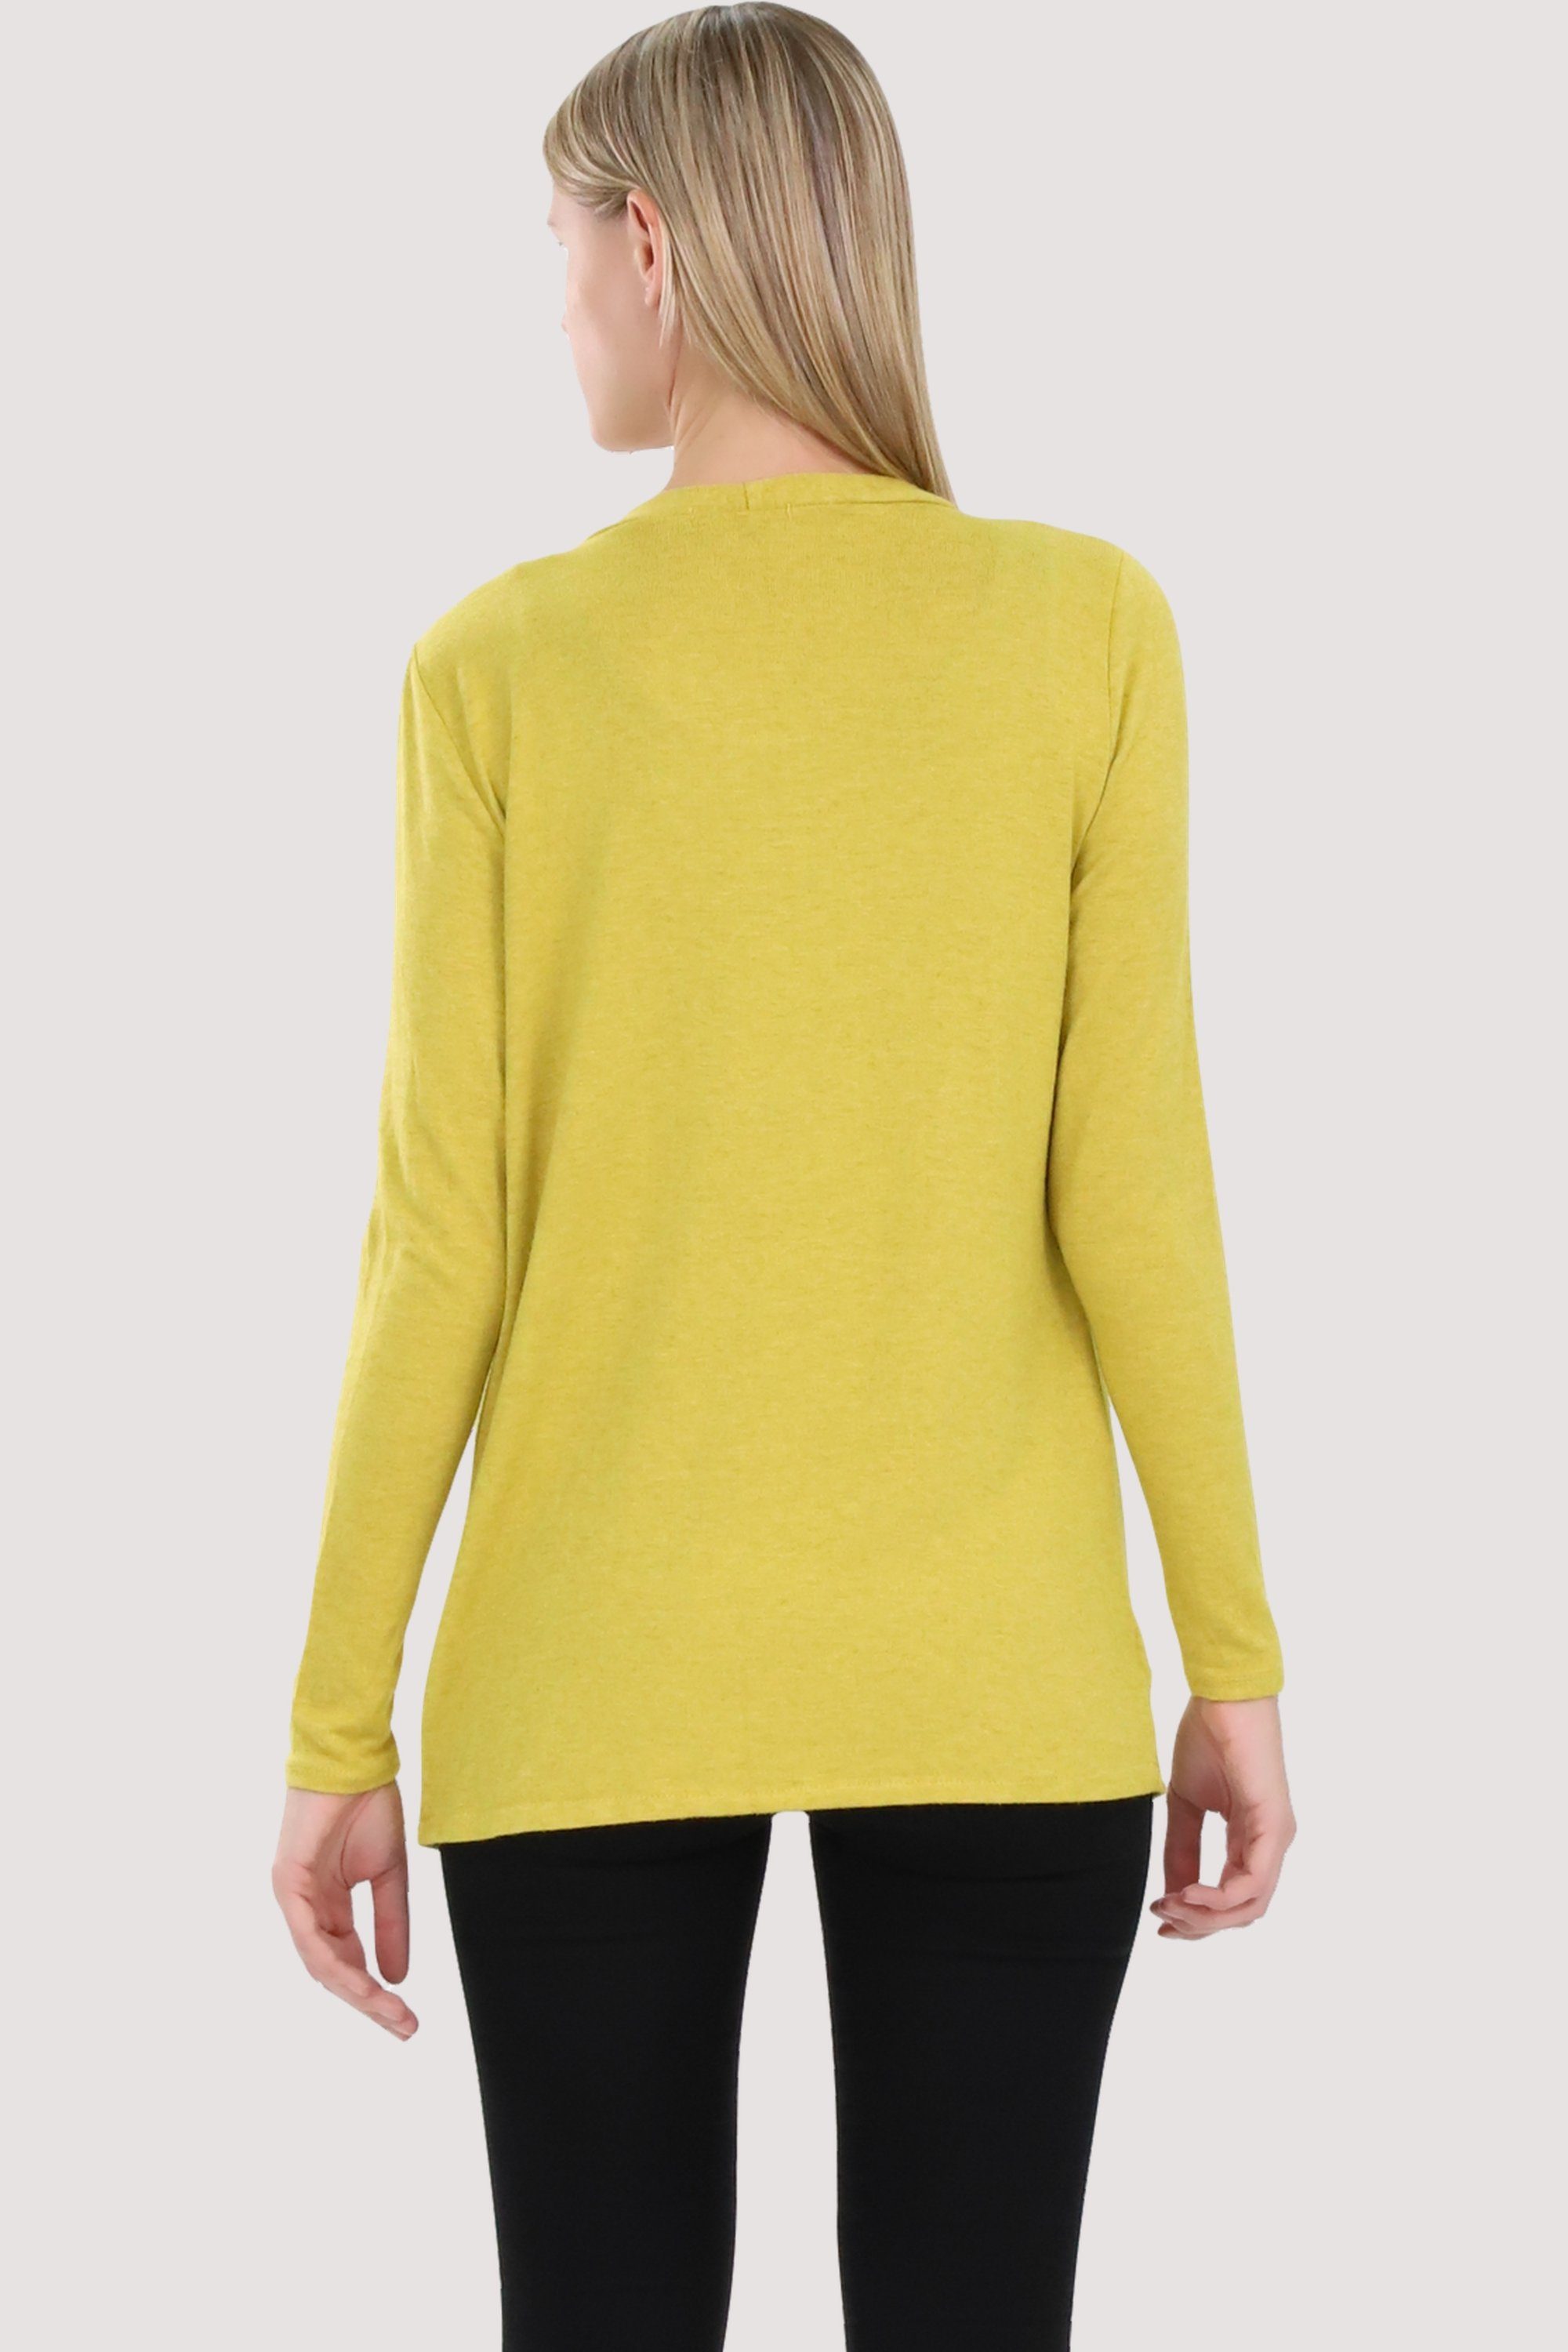 Eingriffstaschen Jacke Feinstrick gelb malito more than 2243 mit Cardigan fashion